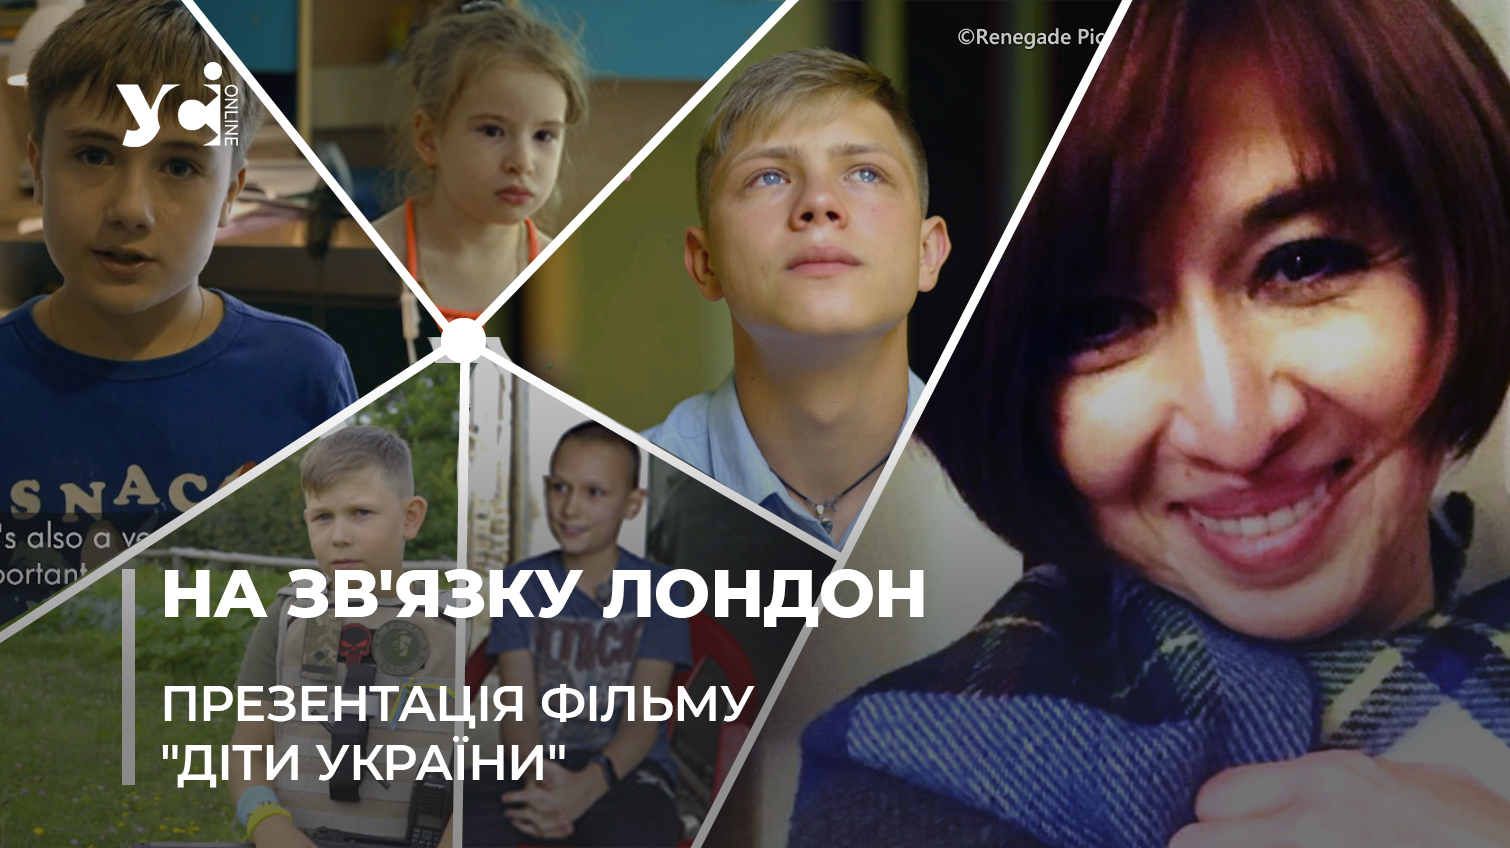 «Жодна дитина в Україні не жалілася»: в Європі презентували фільм про українських дітей «фото»